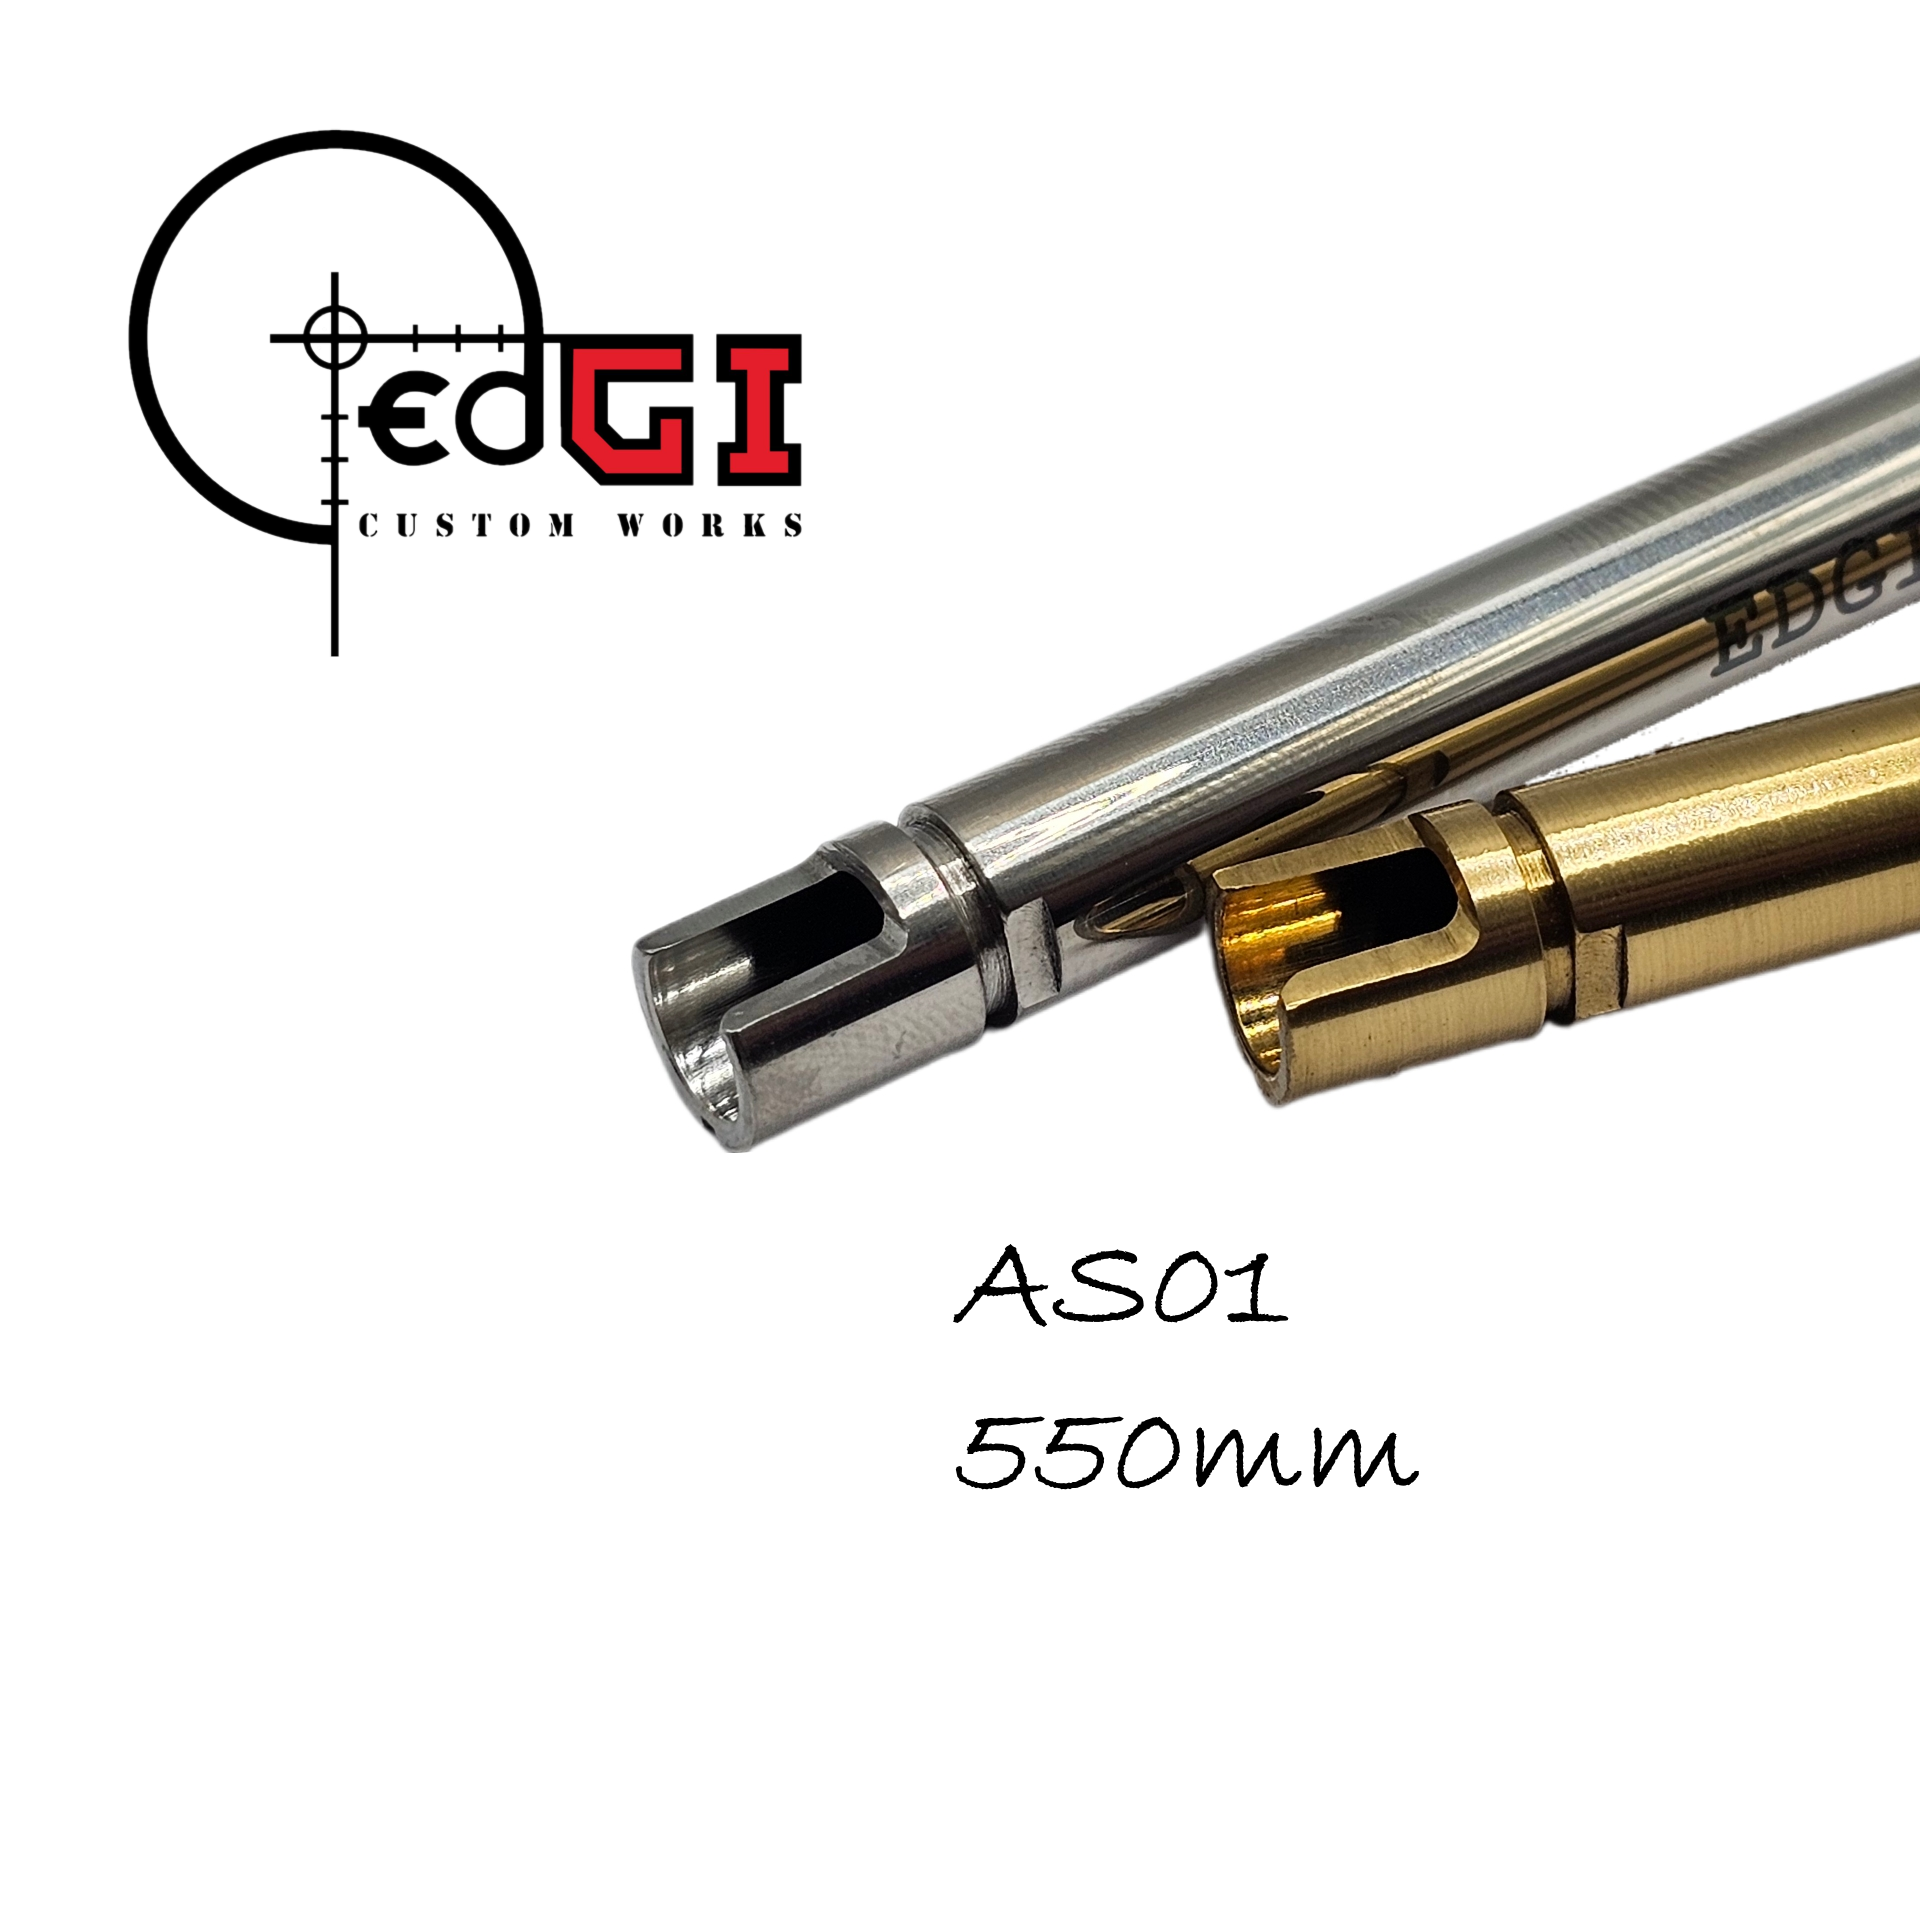 Edgi Custom Works - 550mm VSR Inner Barrel - AS01